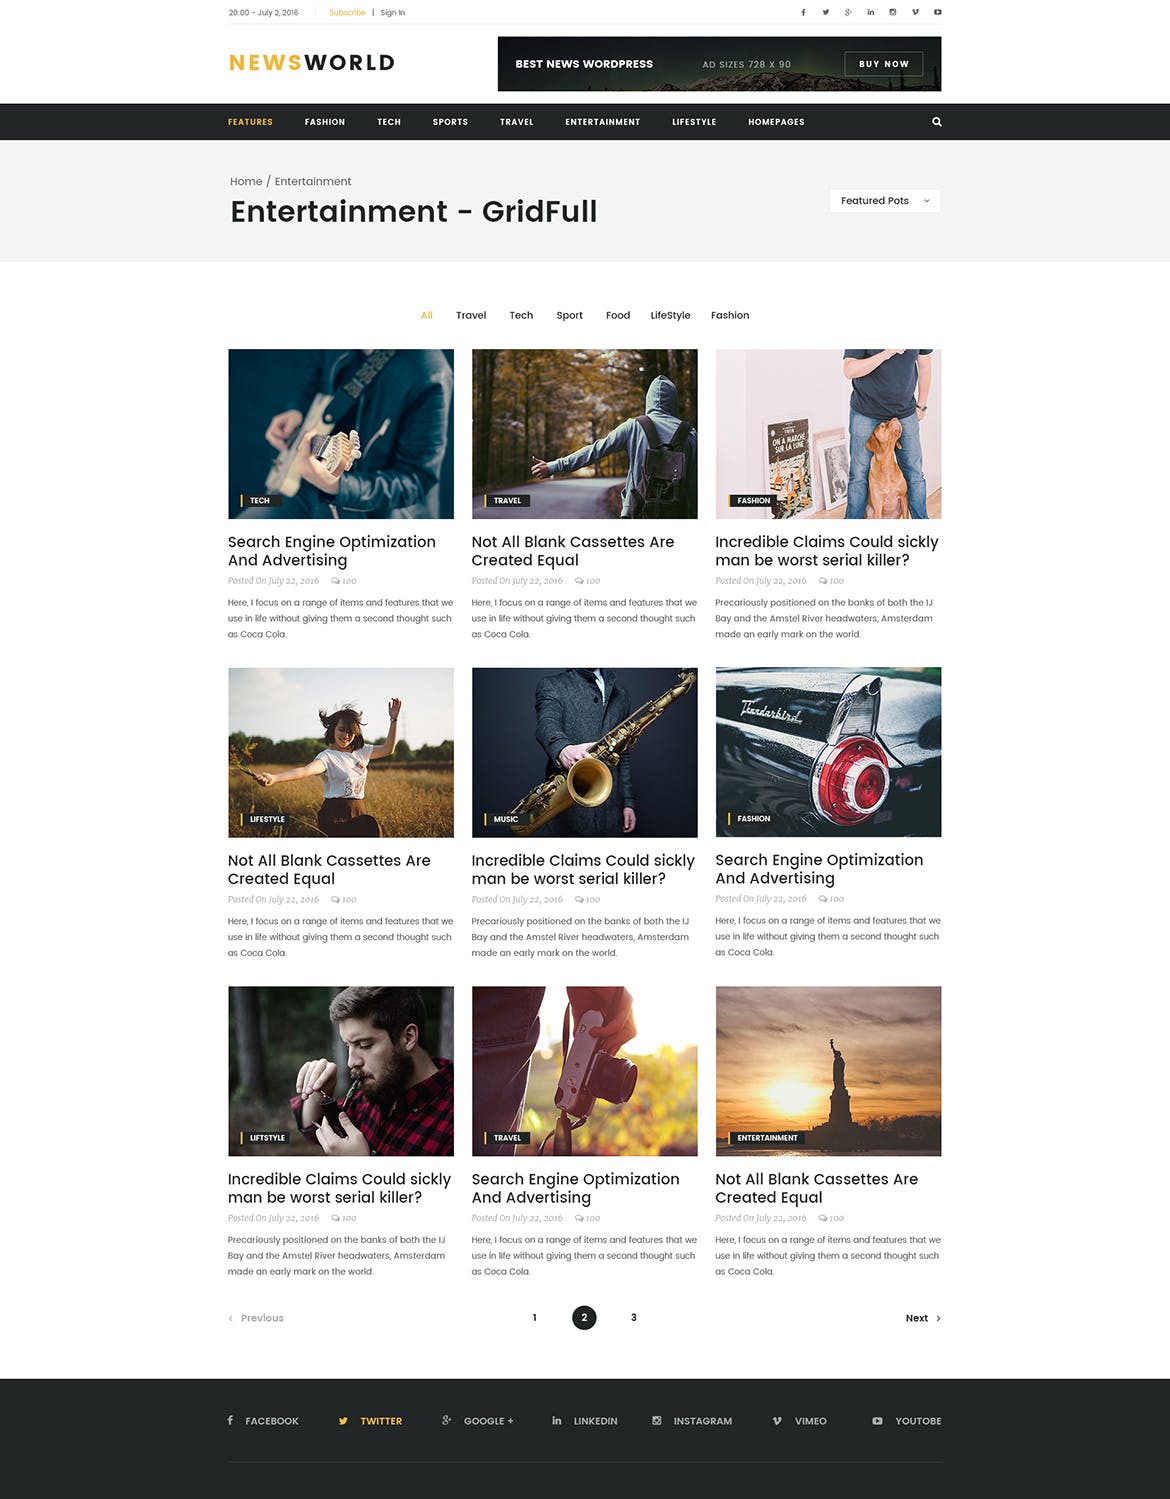 新闻资讯杂志类网站设计HTML模板蚂蚁素材精选 Newsworld | Mutil-Concept Magazine HTML5 Template插图(8)